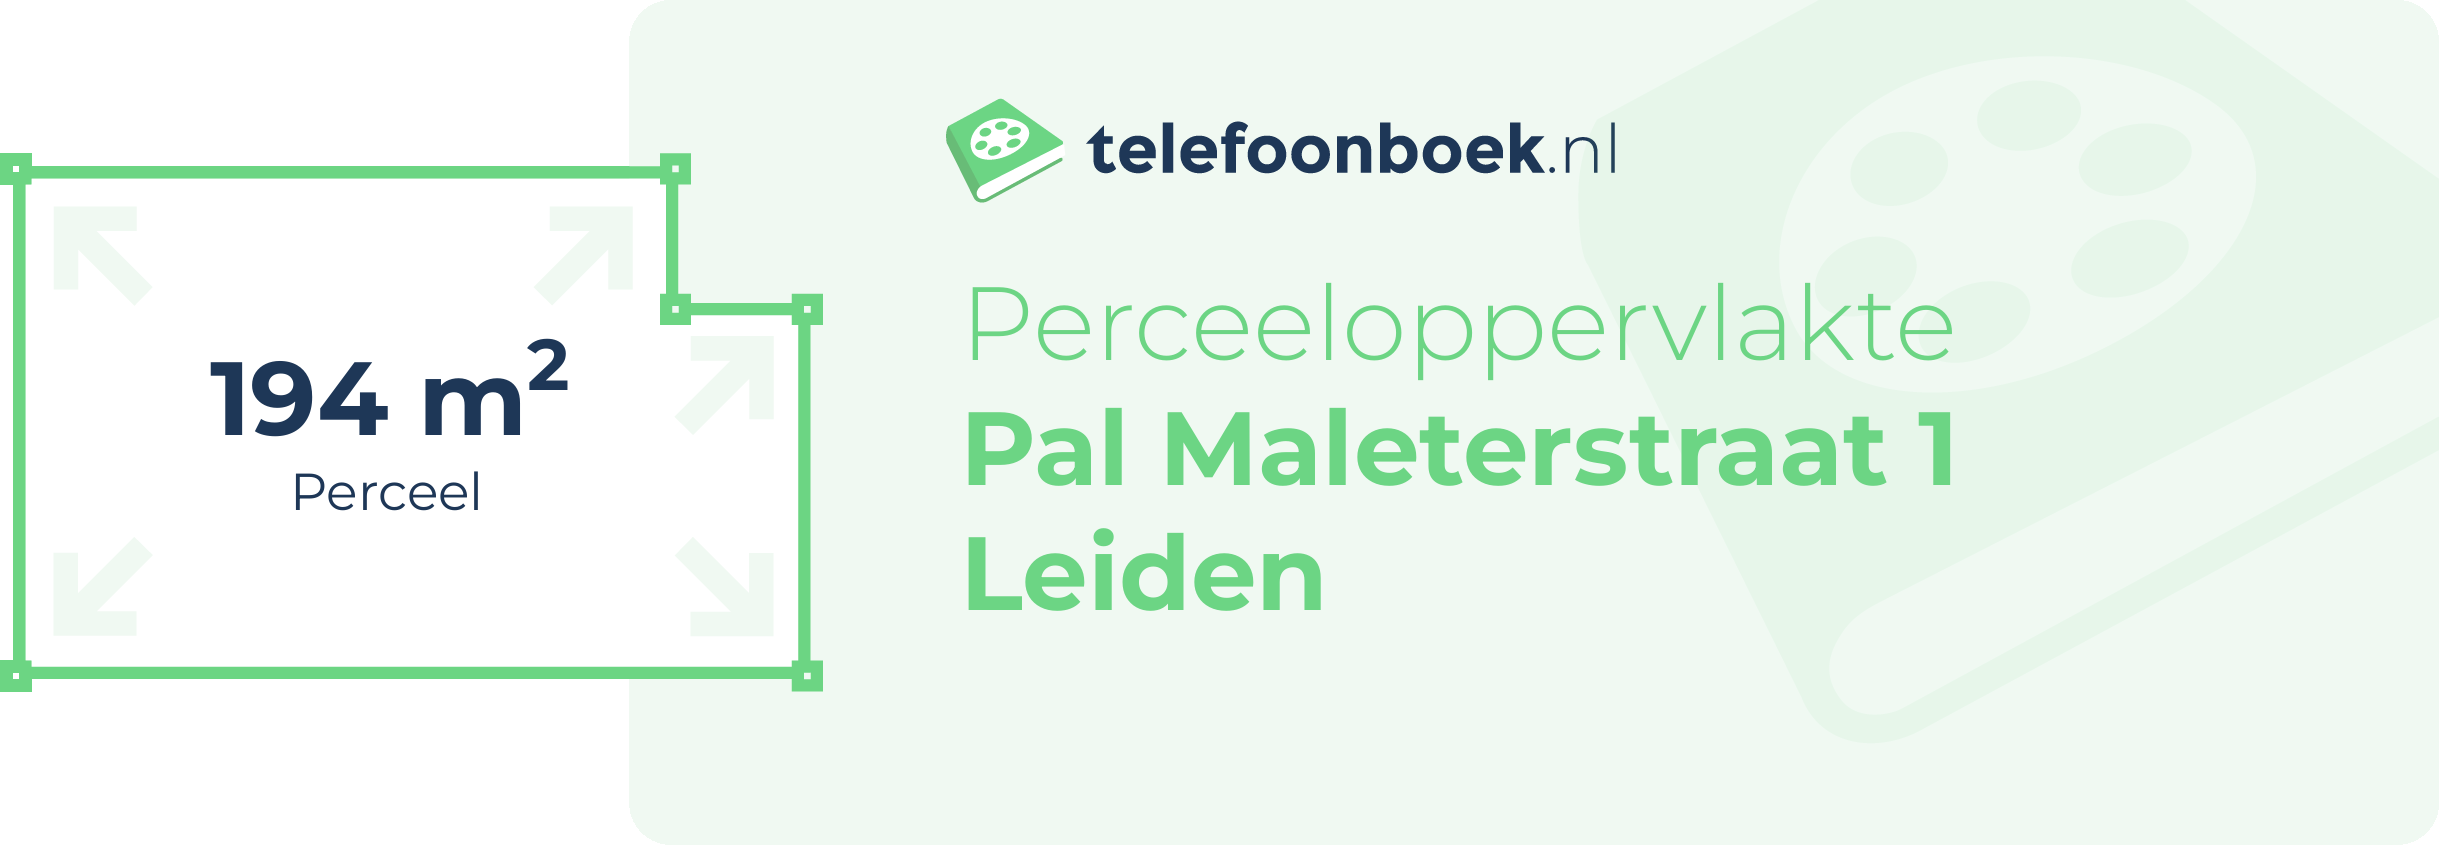 Perceeloppervlakte Pal Maleterstraat 1 Leiden